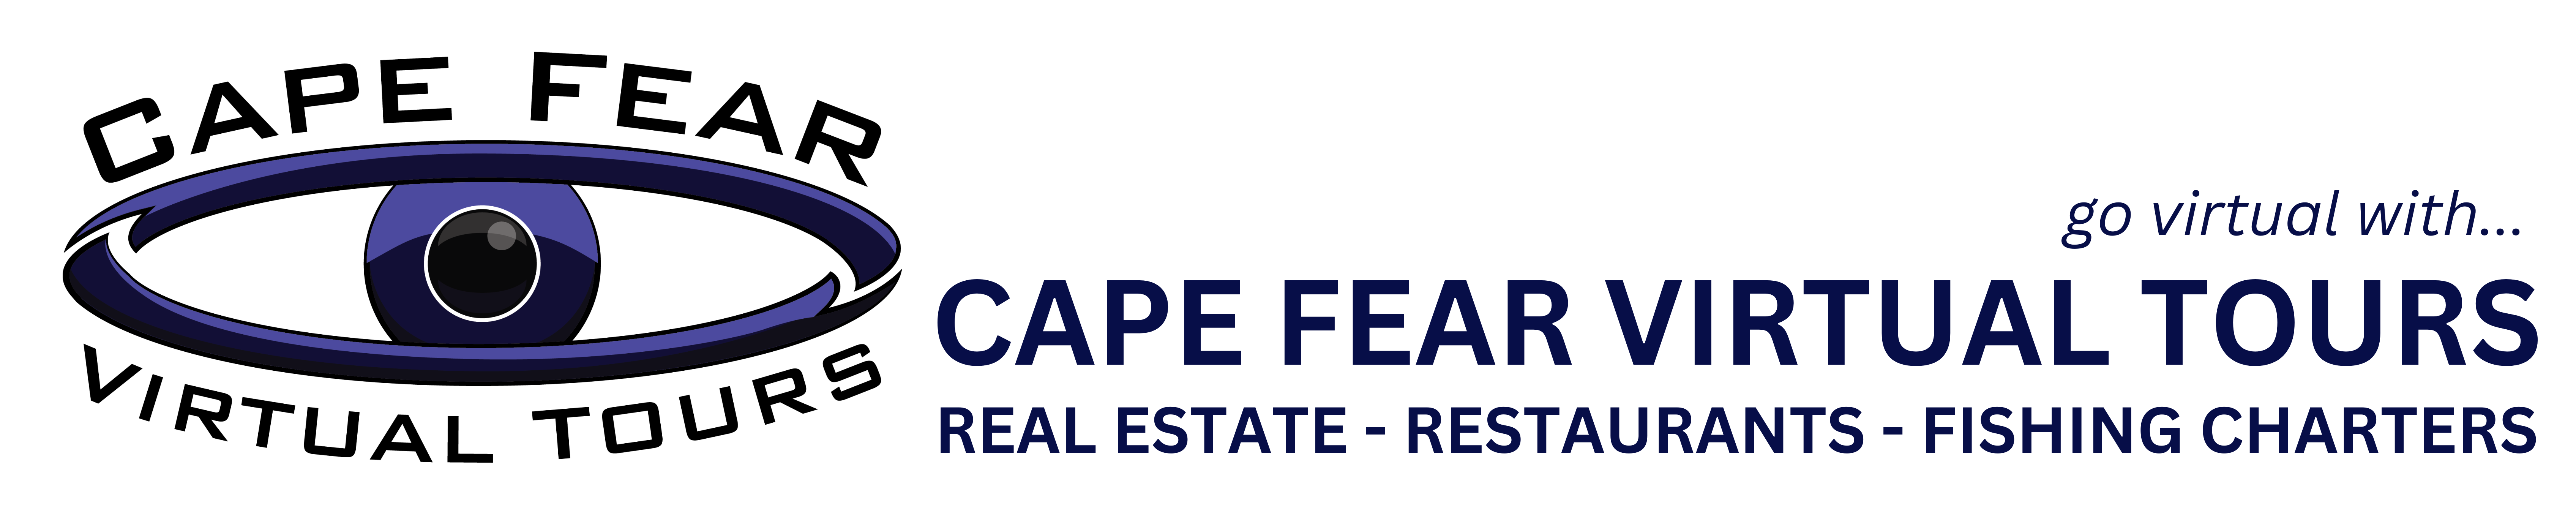 Cape Fear Virtual after content Tours